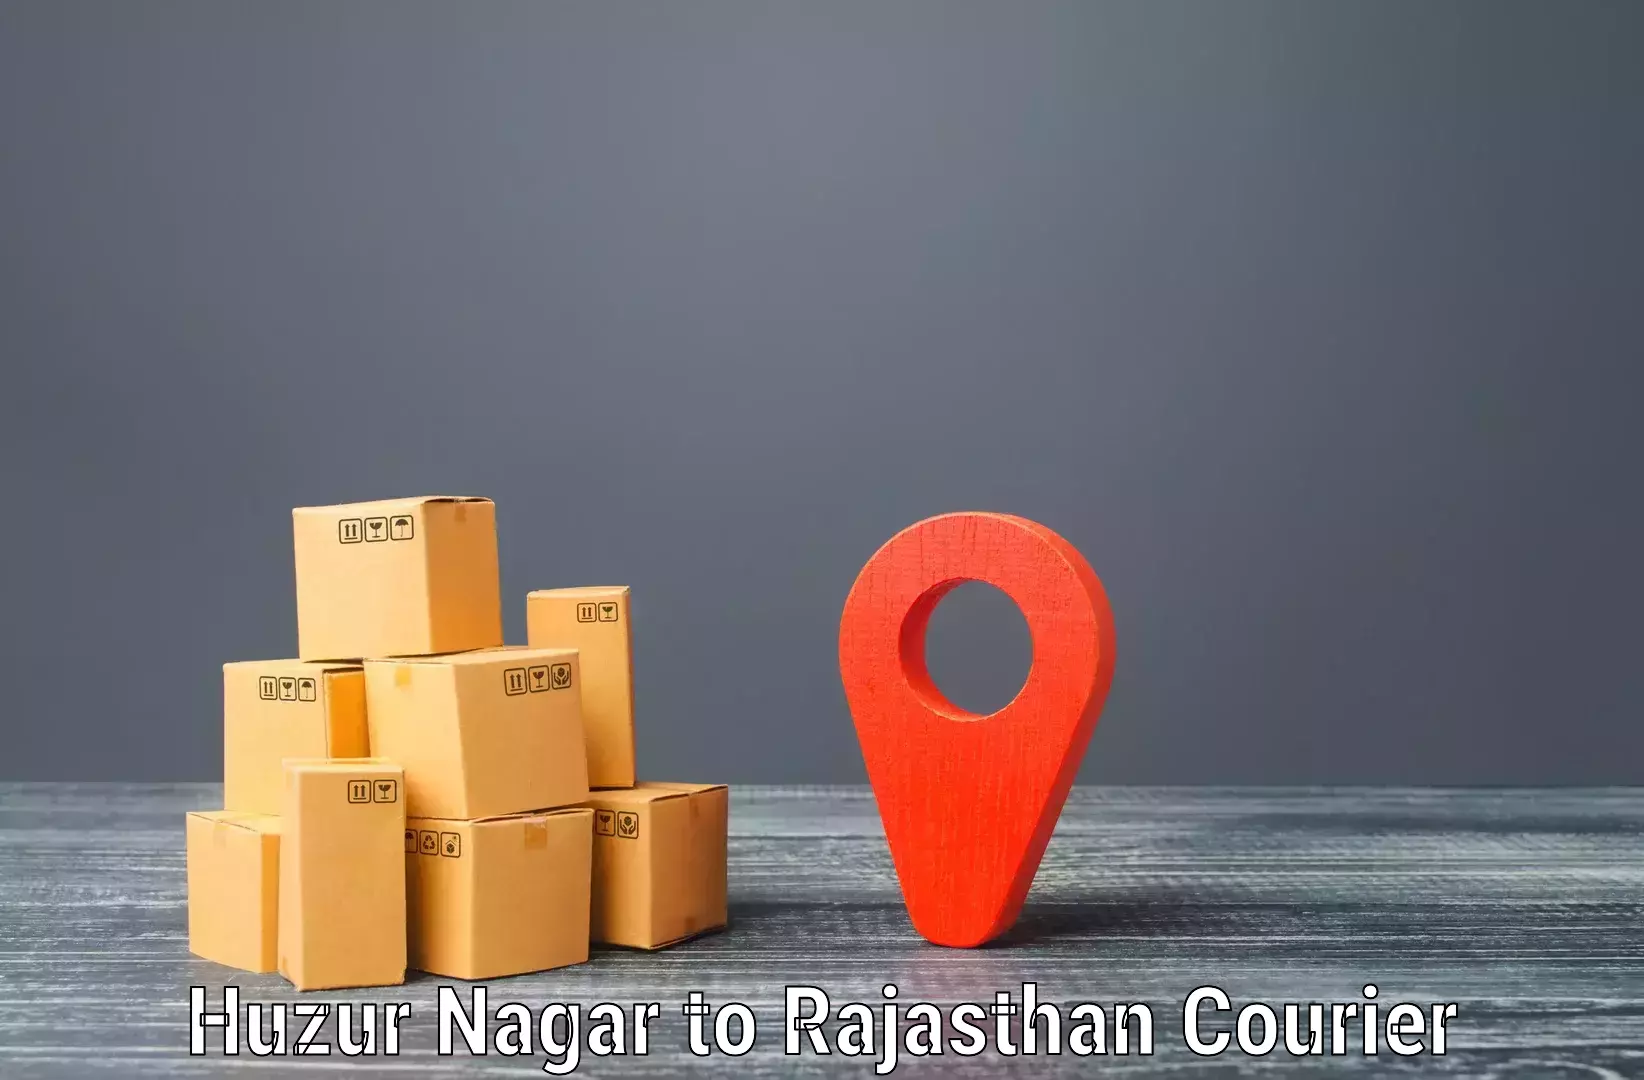 Efficient shipping platforms Huzur Nagar to Yeswanthapur